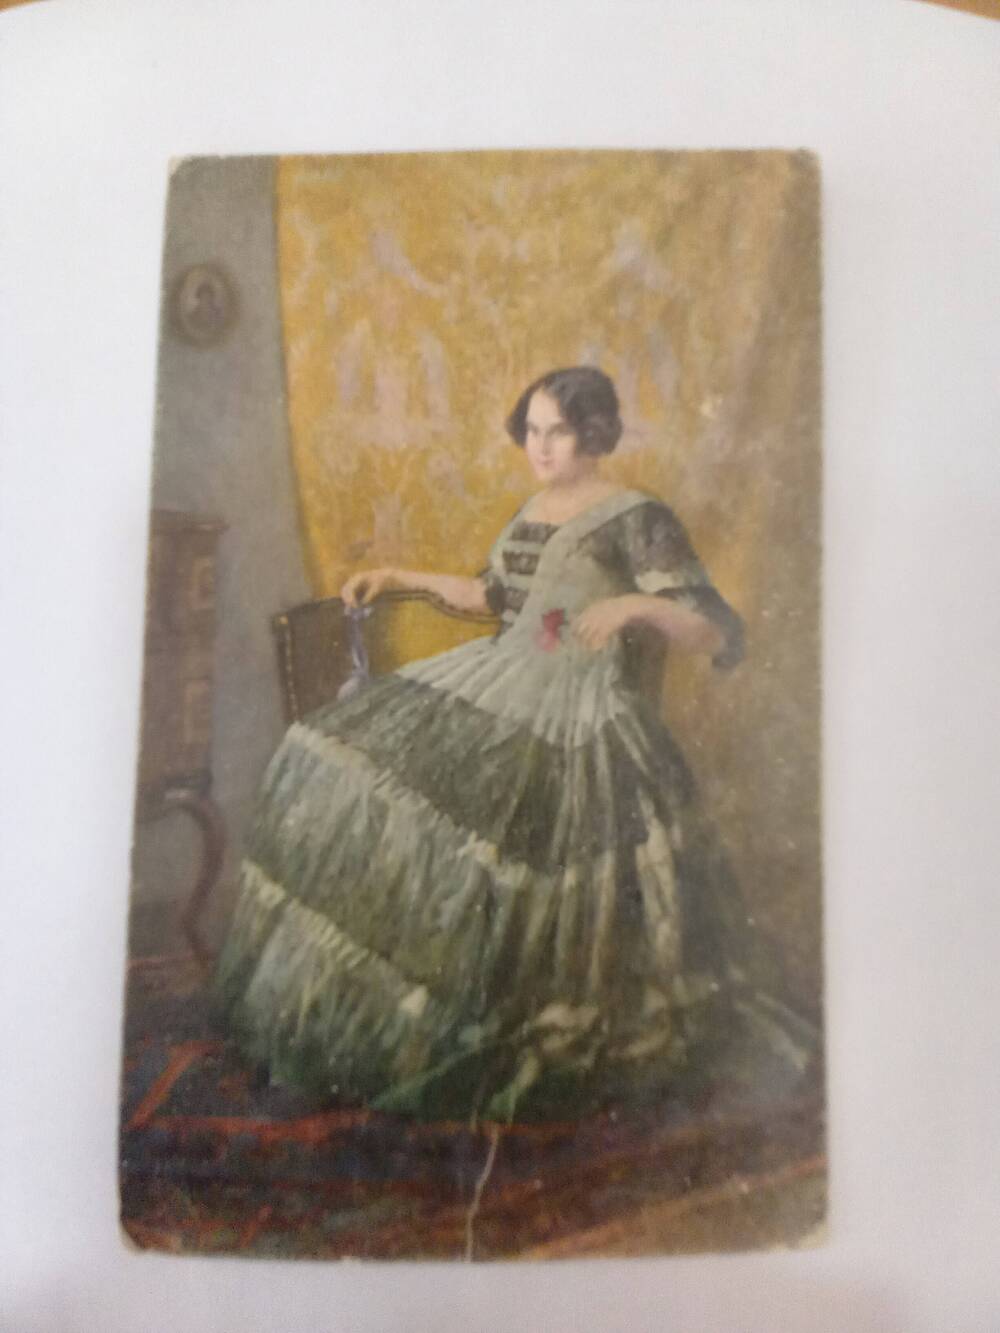 Открытка № 584. Немецкая открытка с изображением дамы.